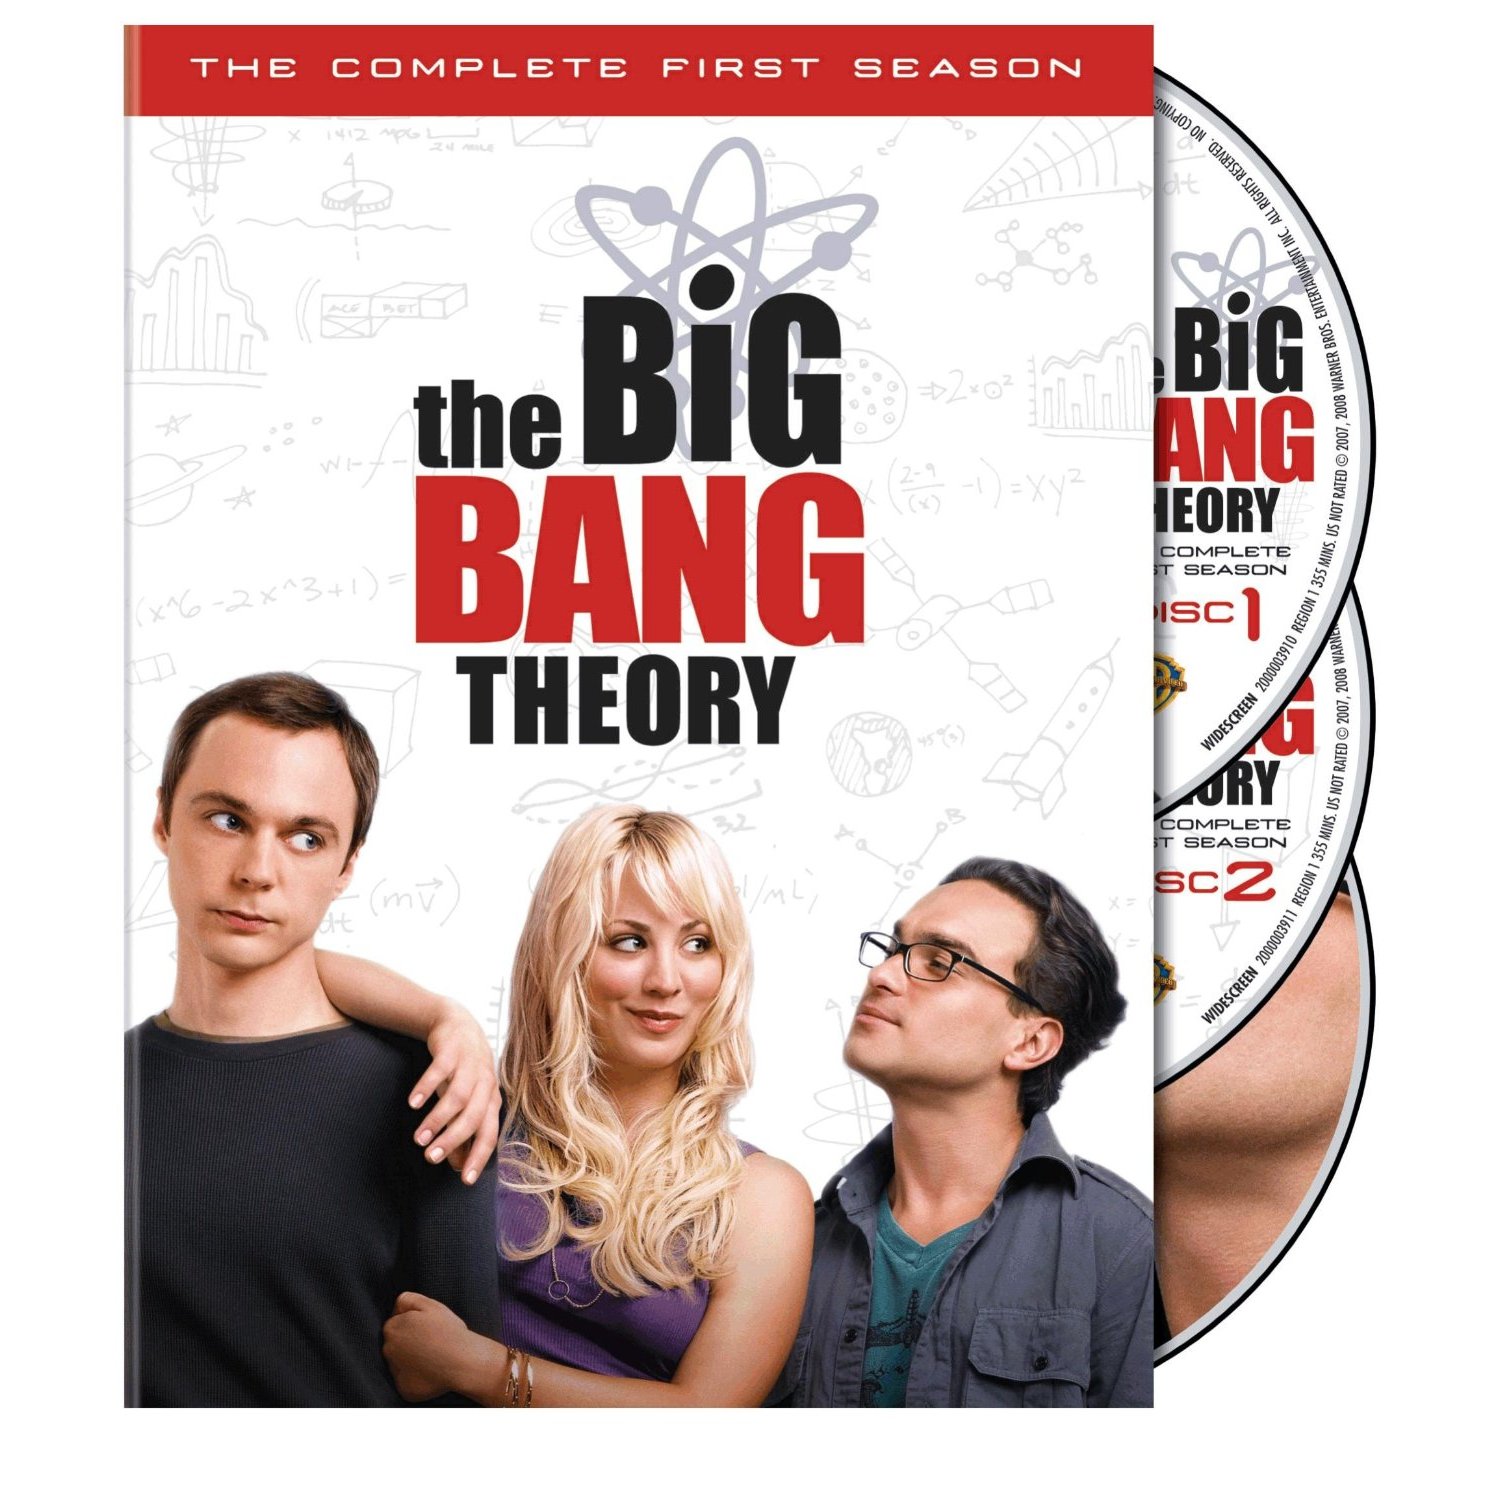 The Big Bang Theory Season 1 Disk 1